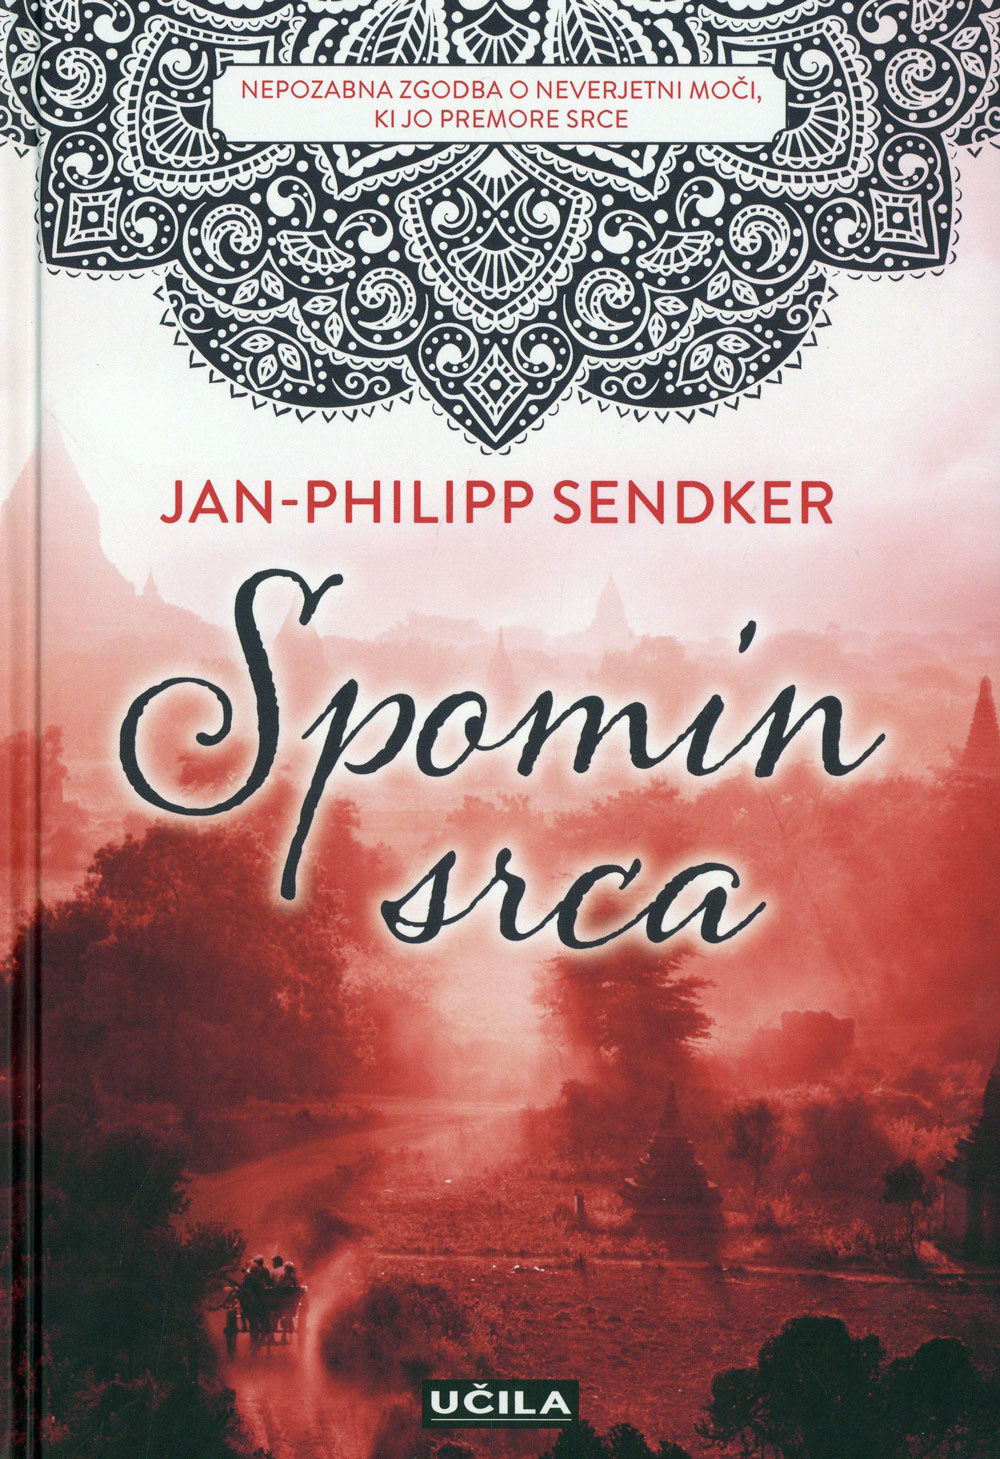 82-311.2 Sendker Jan-Philipp - Spomin srca.jpg